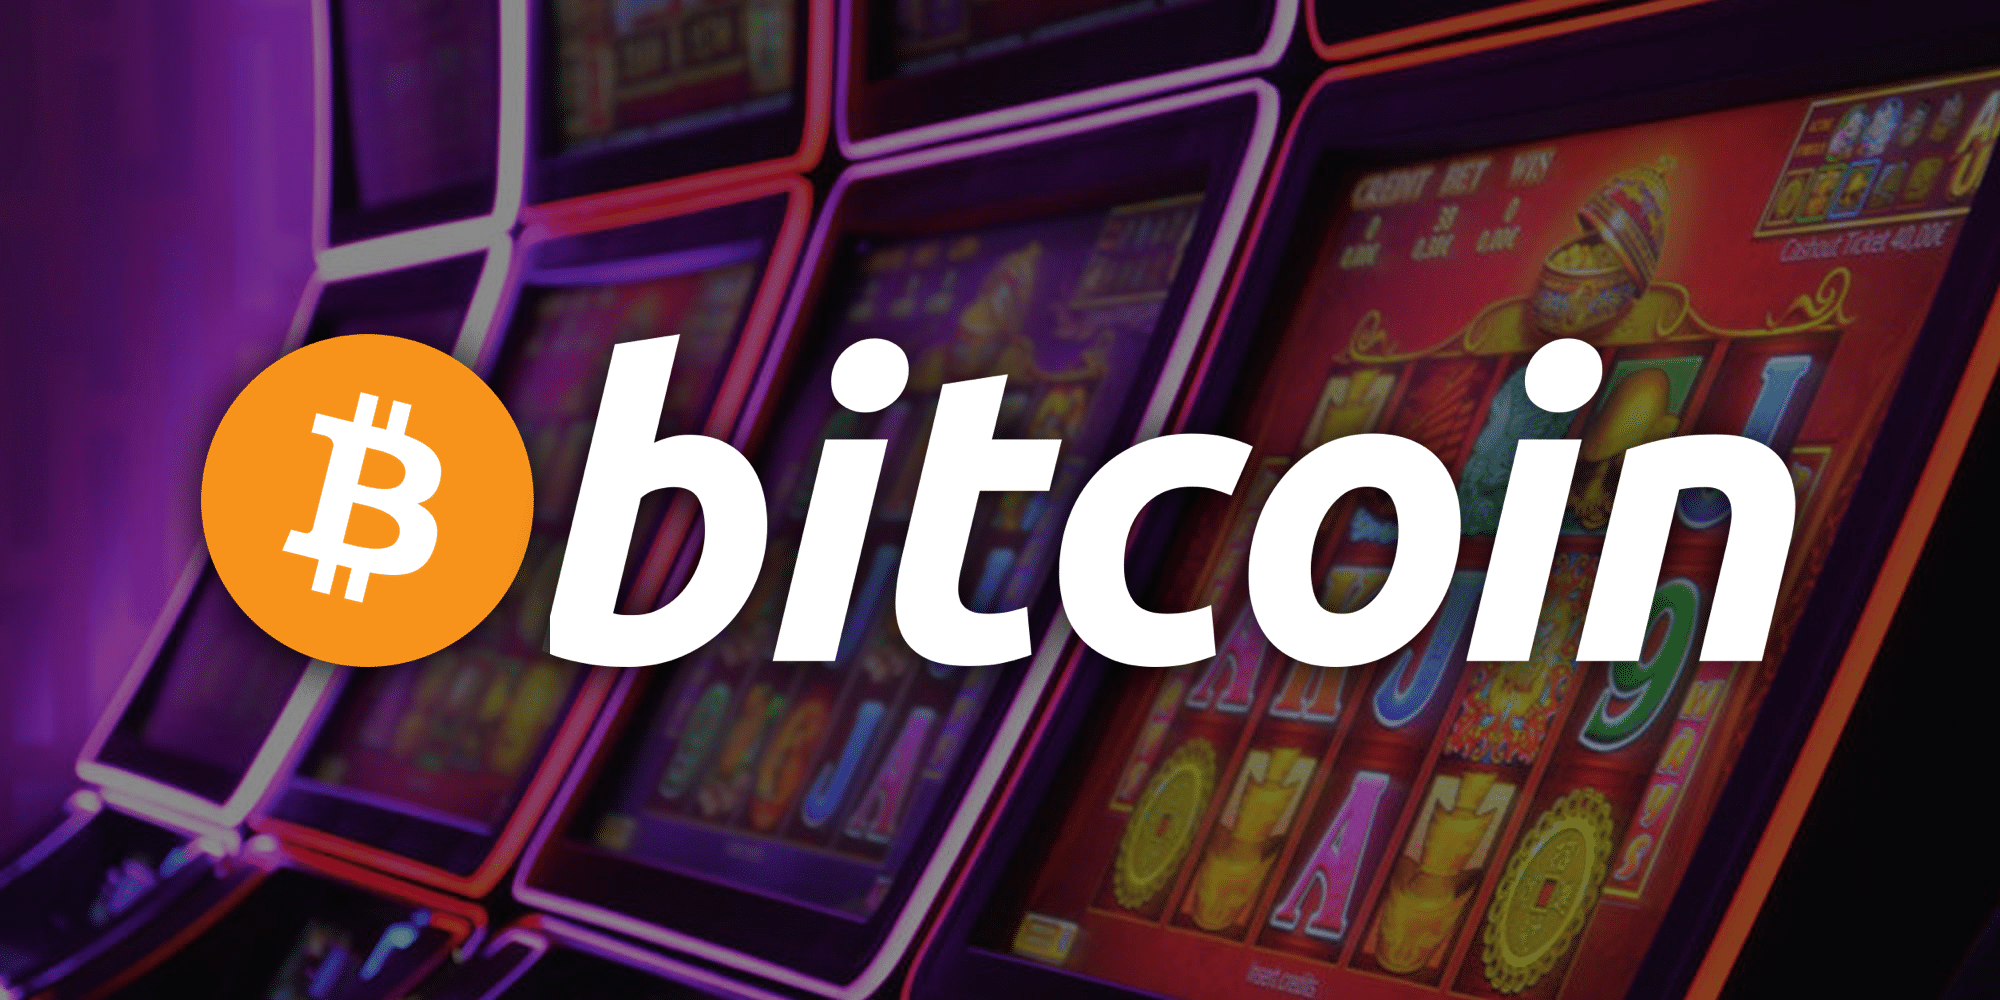 The Etiquette of bitcoin casino